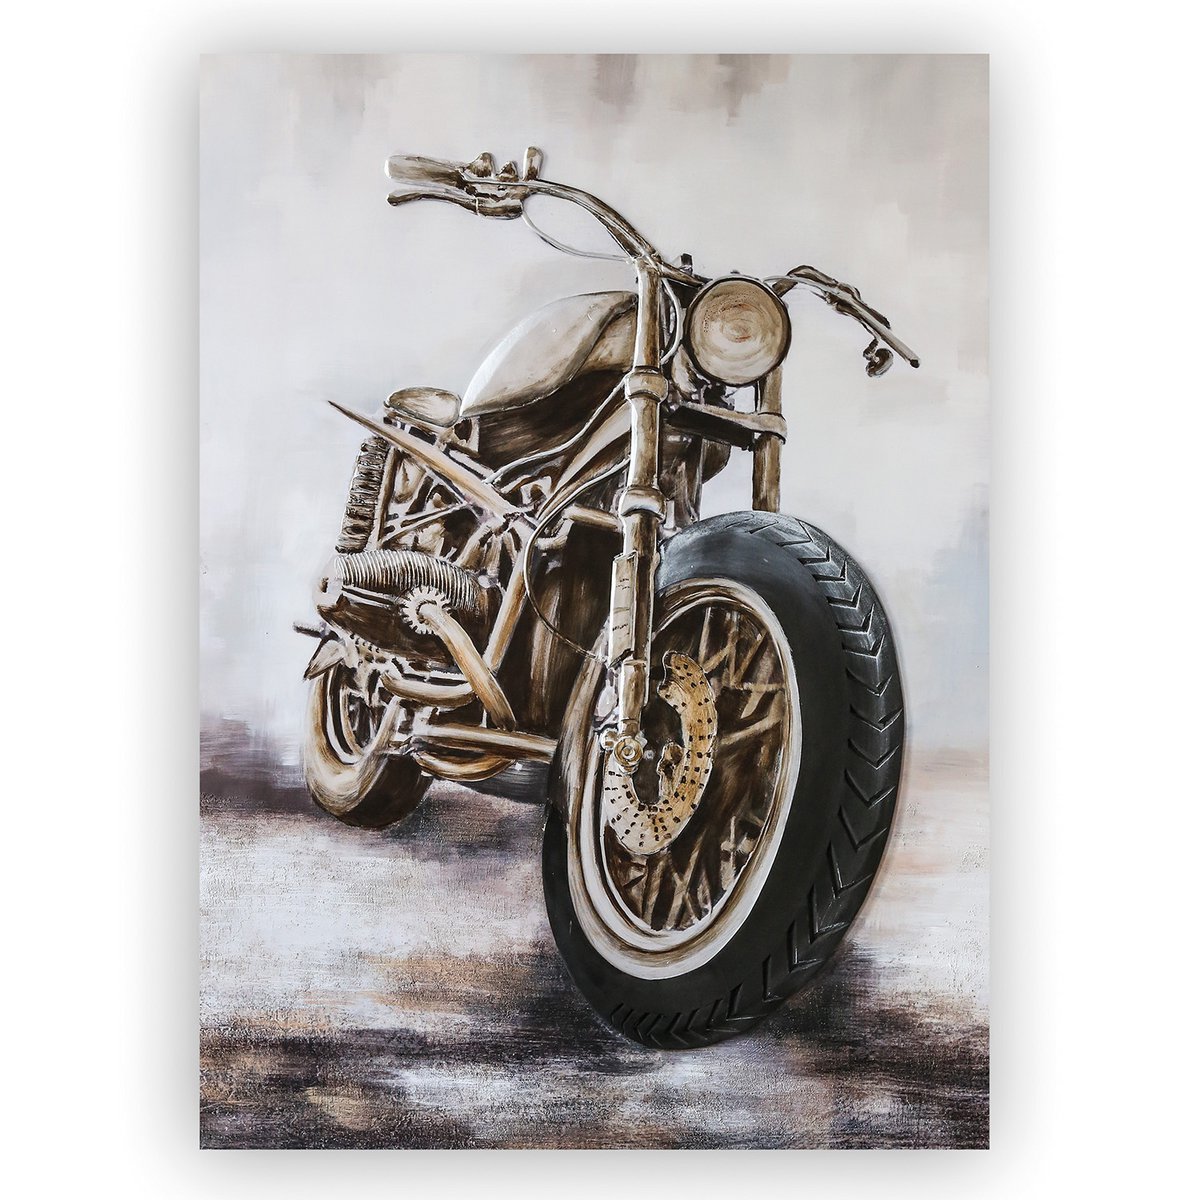 Aluminium/Leinen 3D Bild "Custombike" auf Leinwand 110x150